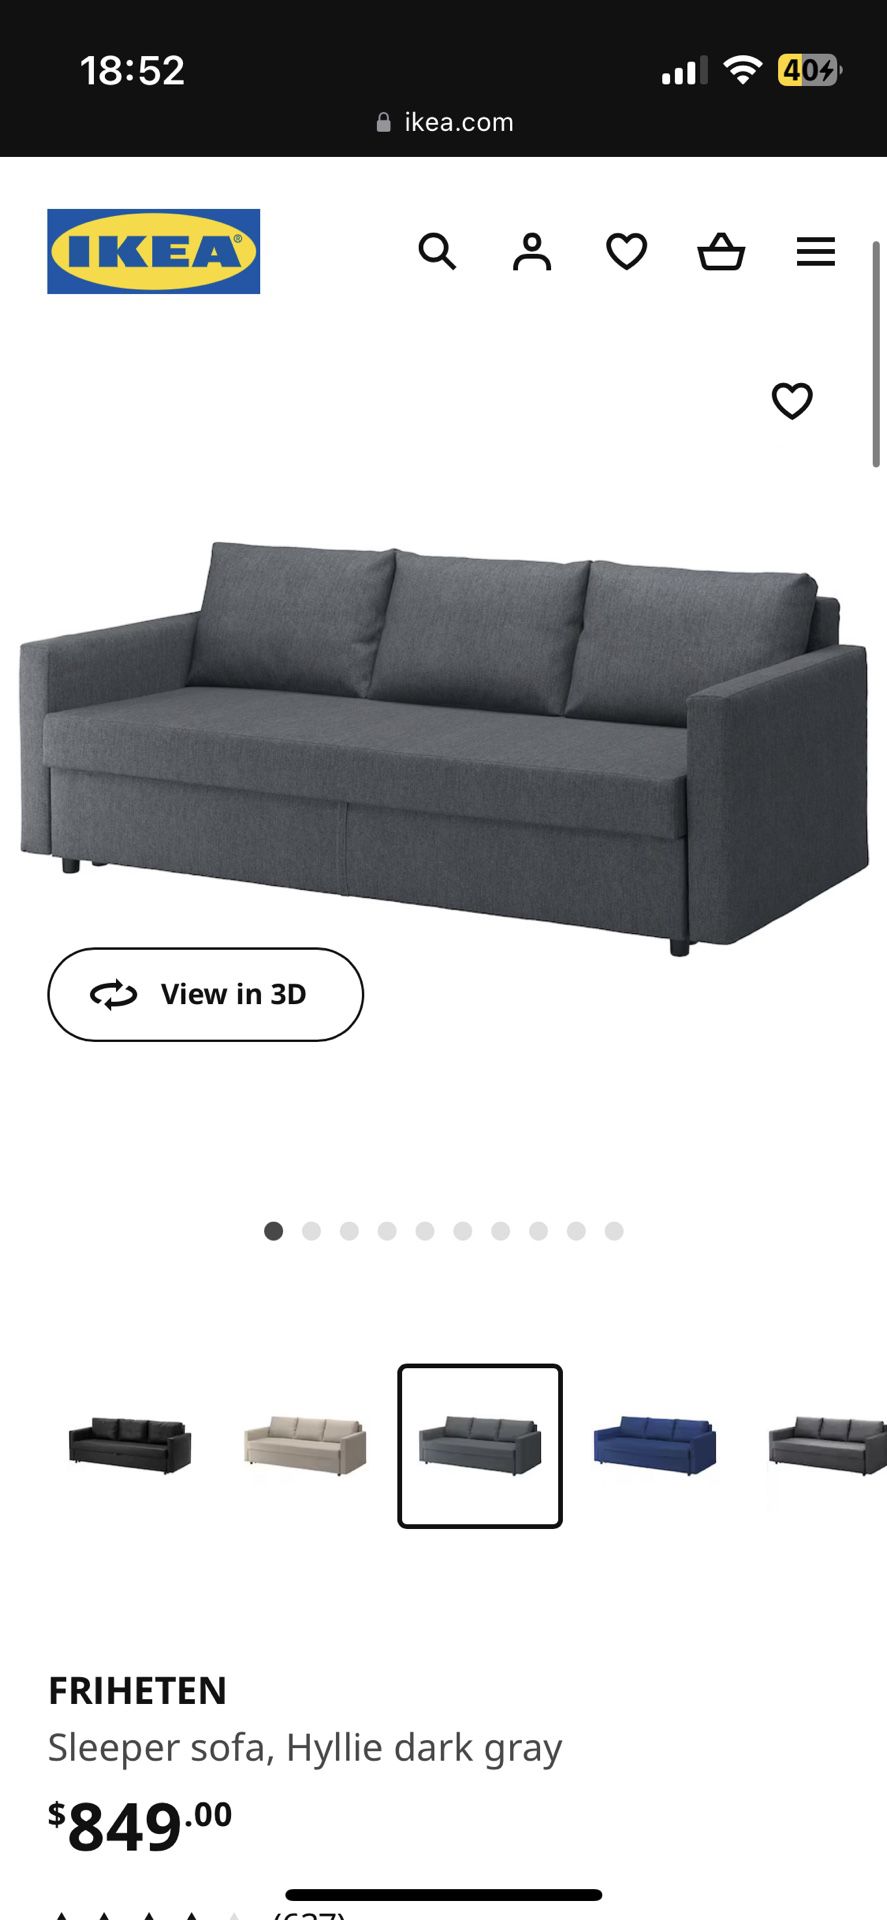 Ikea sofa friheten dark gray